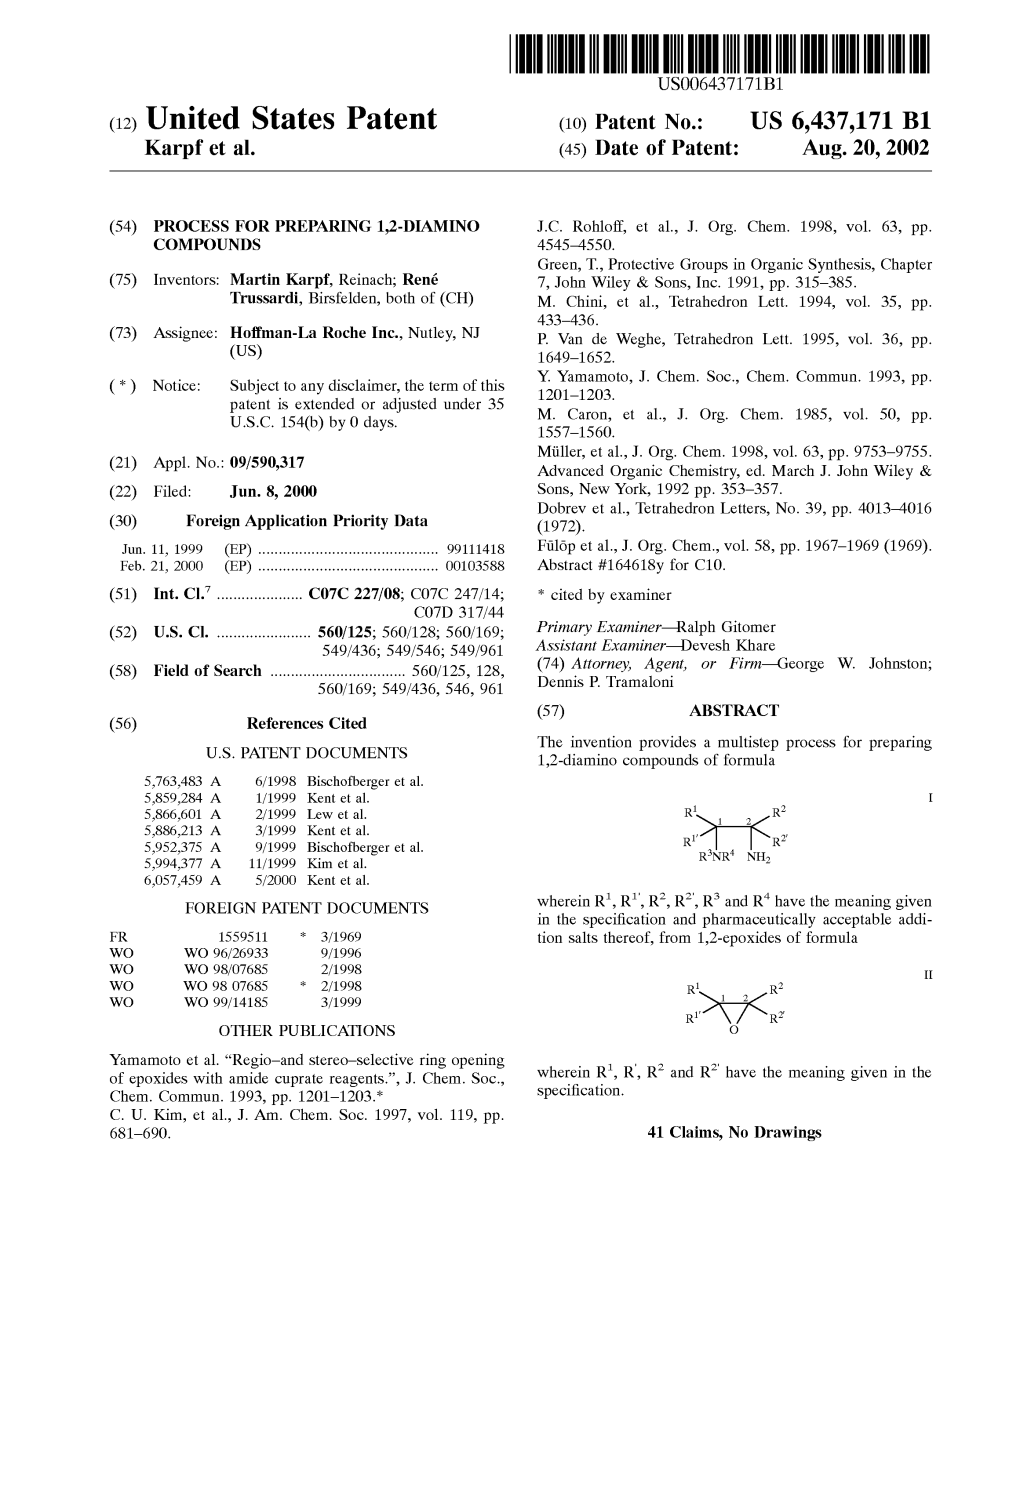 (12) United States Patent (10) Patent No.: US 6,437,171 B1 Karpf Et Al